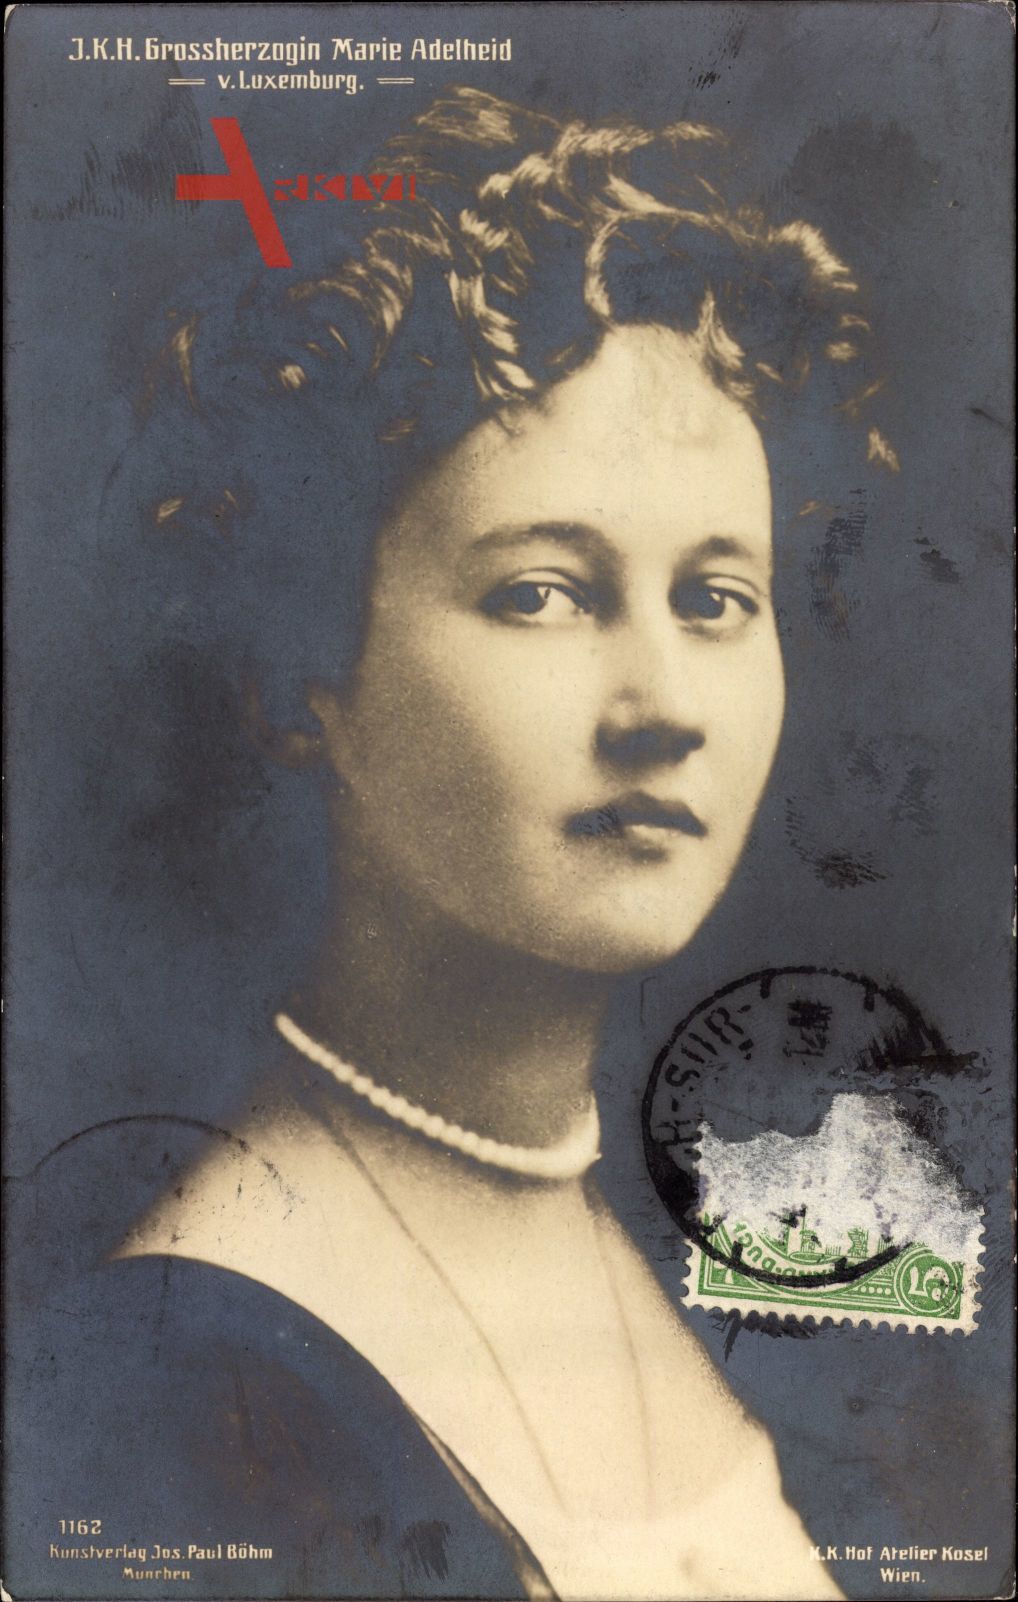 Portrait von I. K. H. Großherzogin Marie Adelheid von Luxemburg um 1912